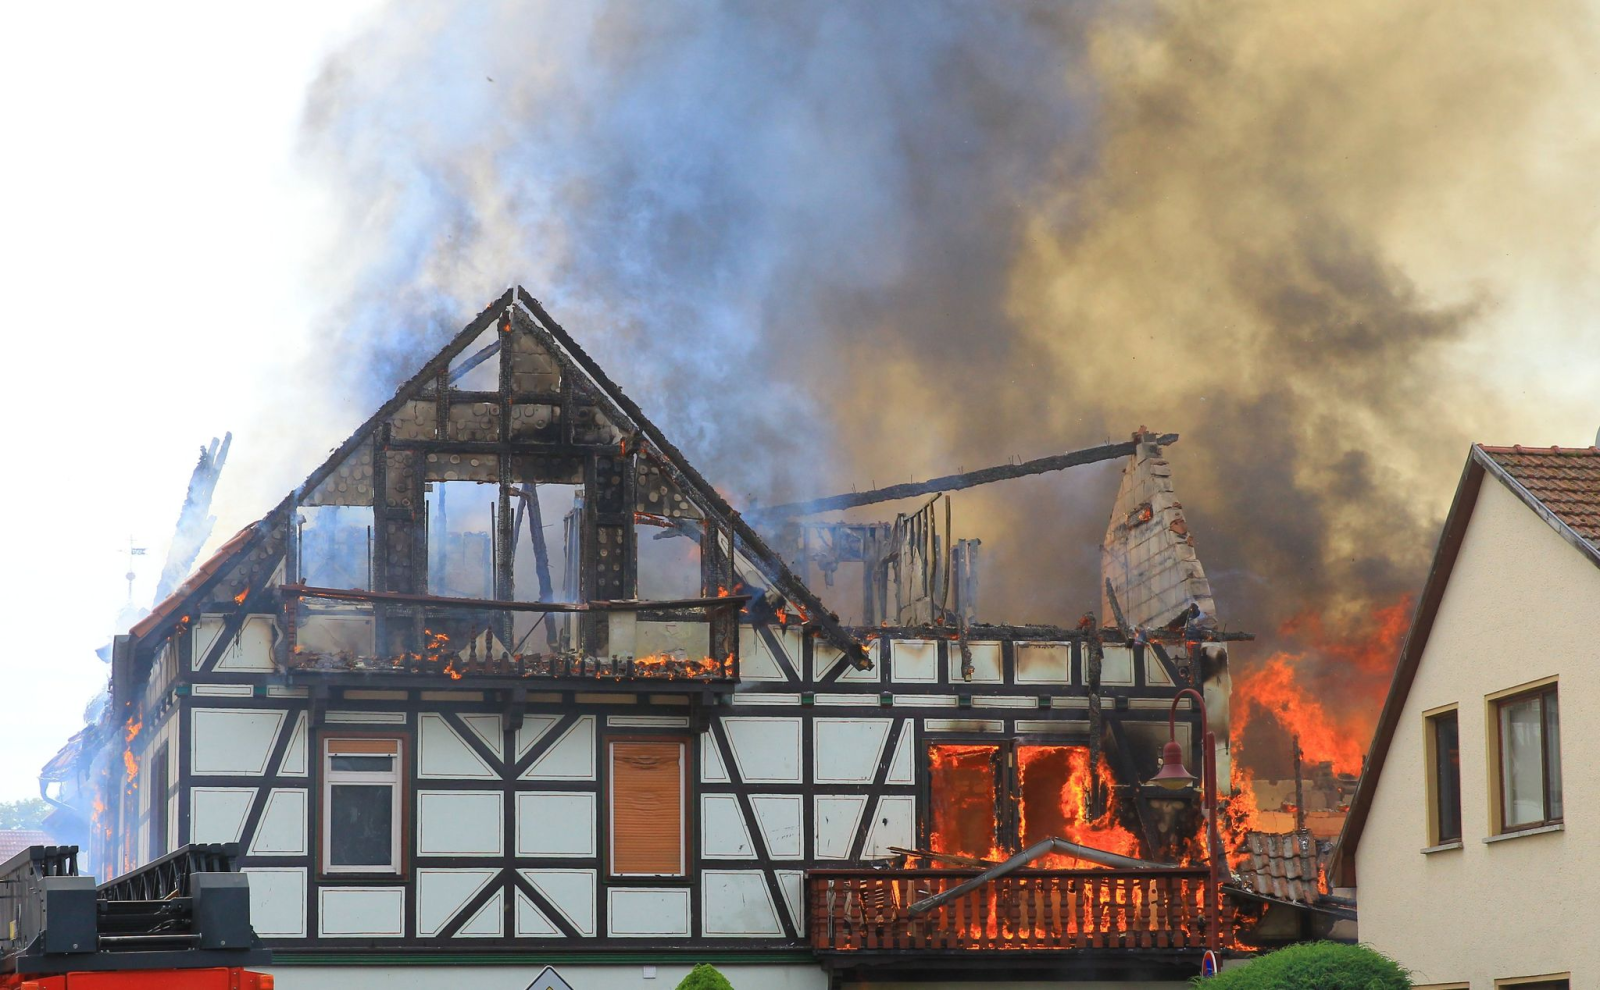 Ein Haus steht bei einem Brand in Flammen.